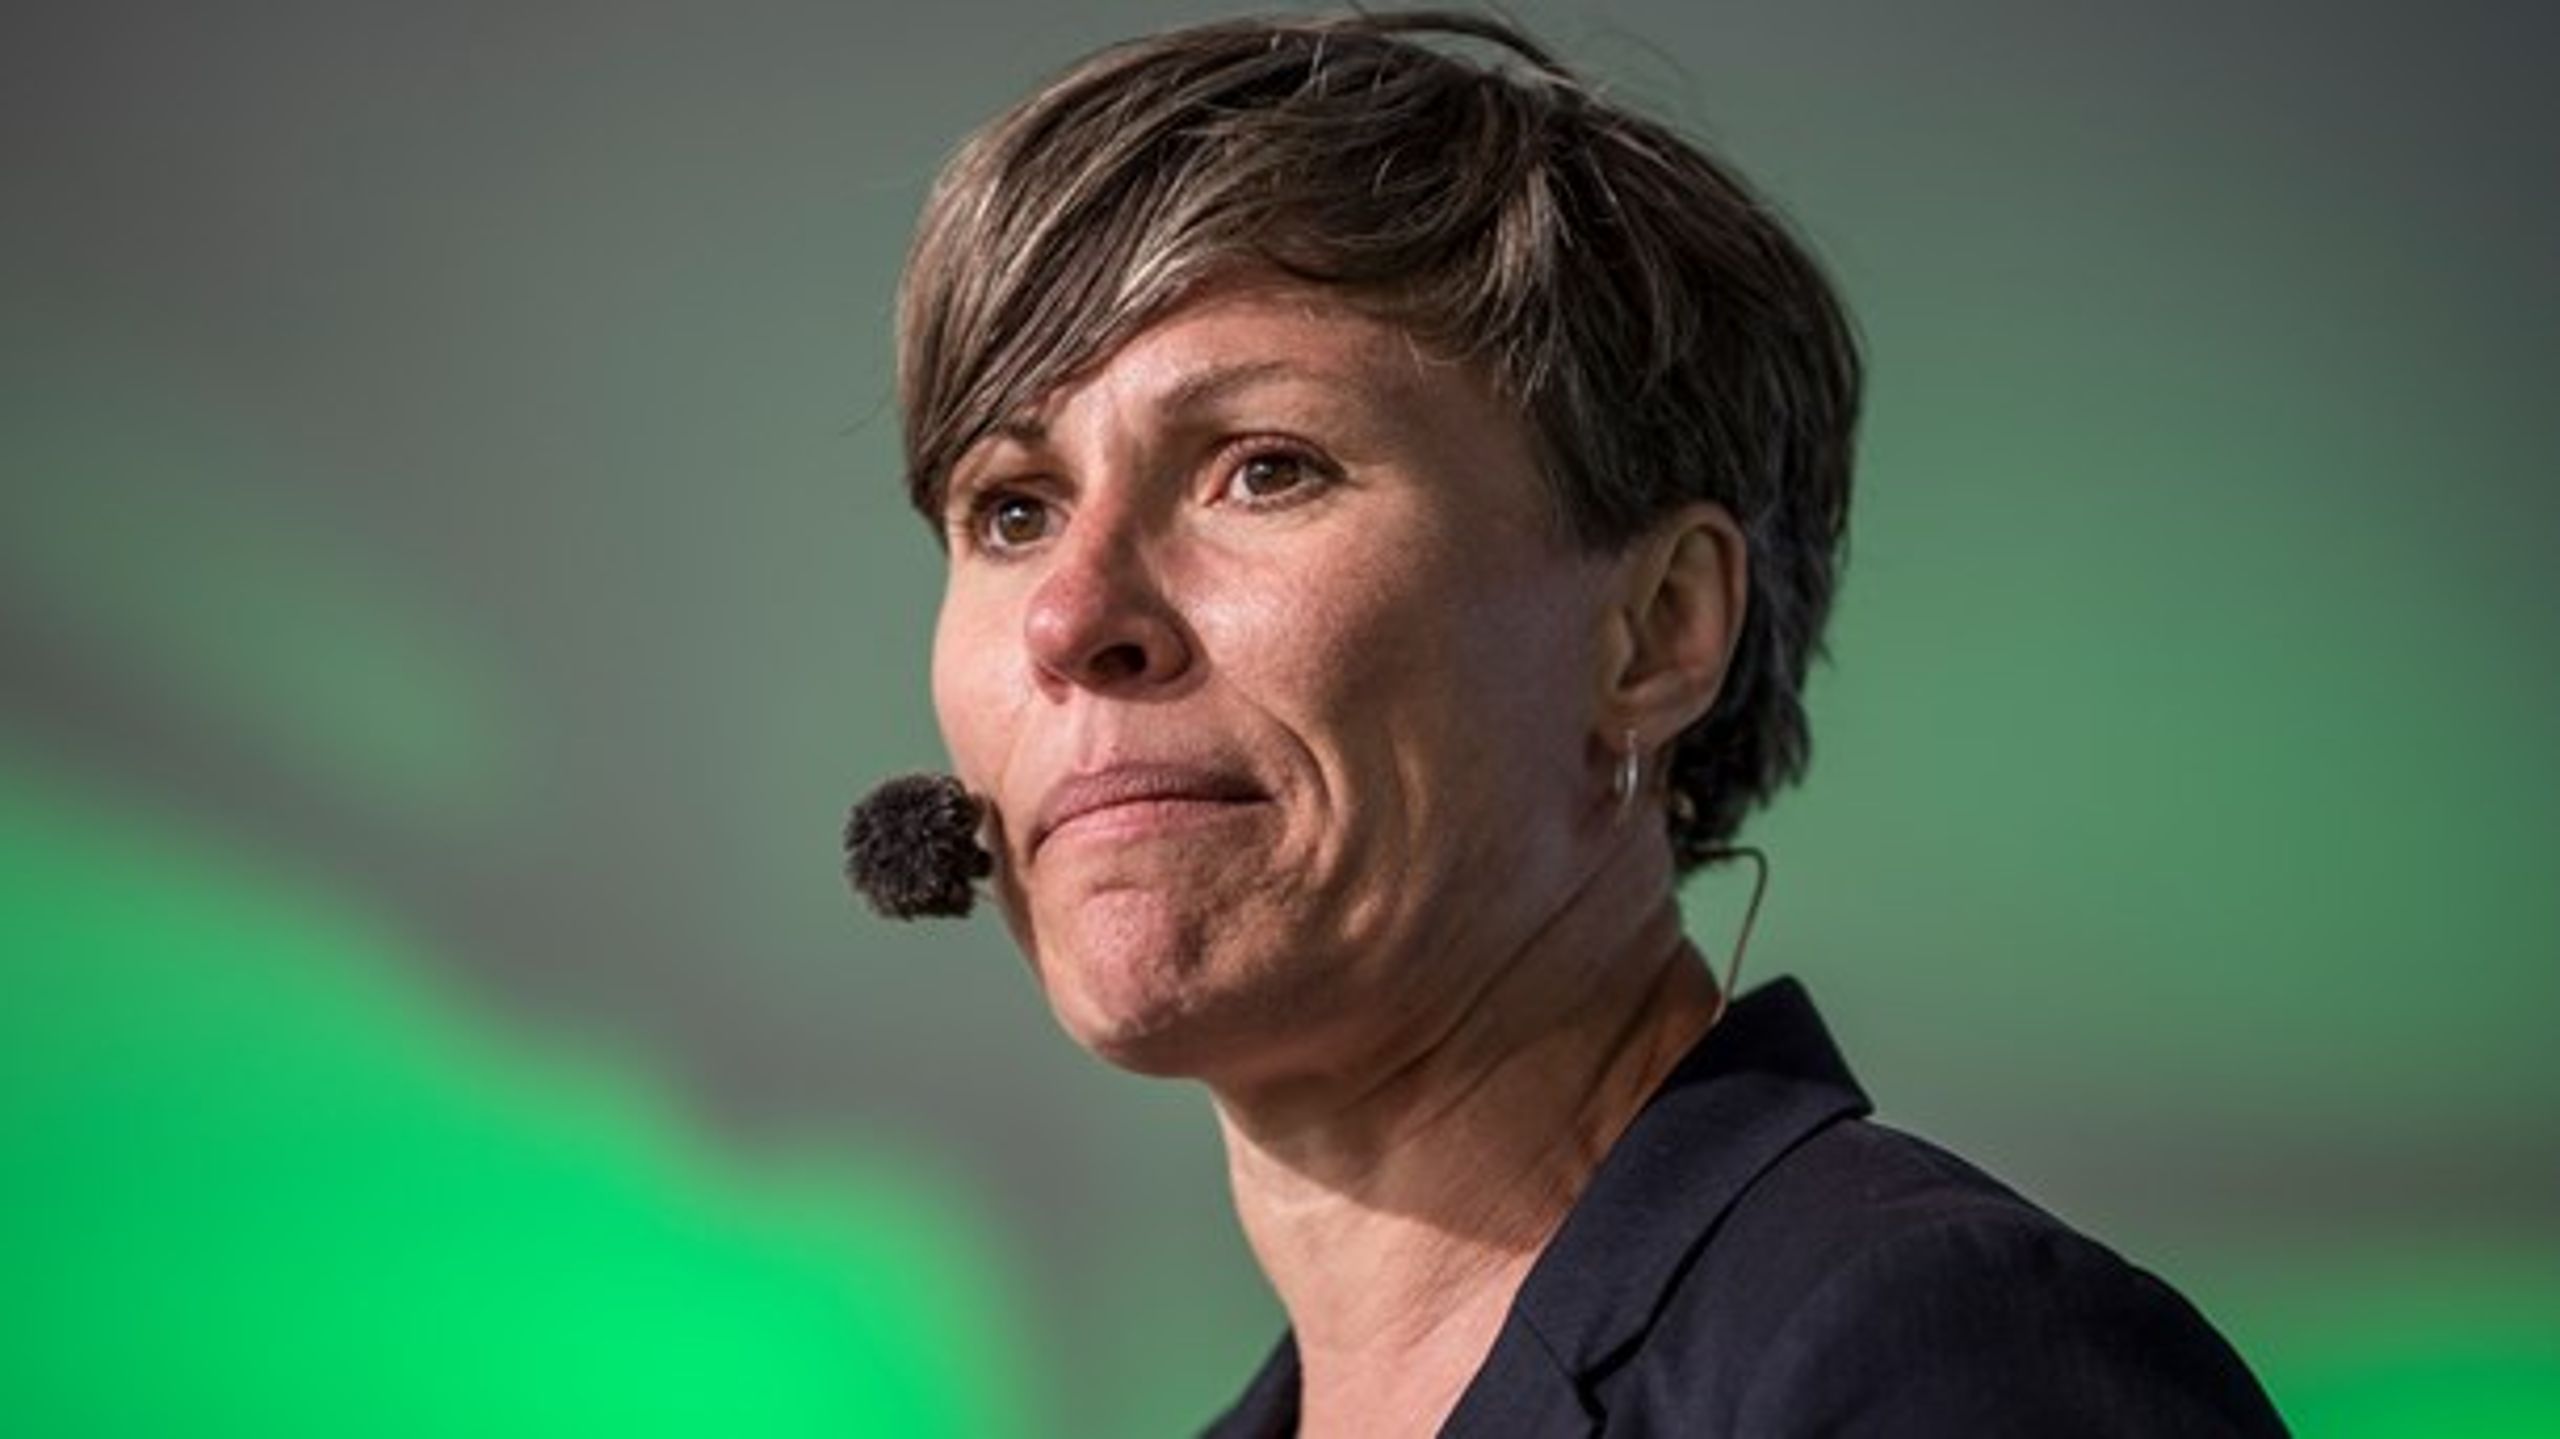 Winni Grosbøll (S) overtager direktørposten i Friluftsrådet&nbsp;efter Jan Ejlsted, der trådte tilbage i juni.